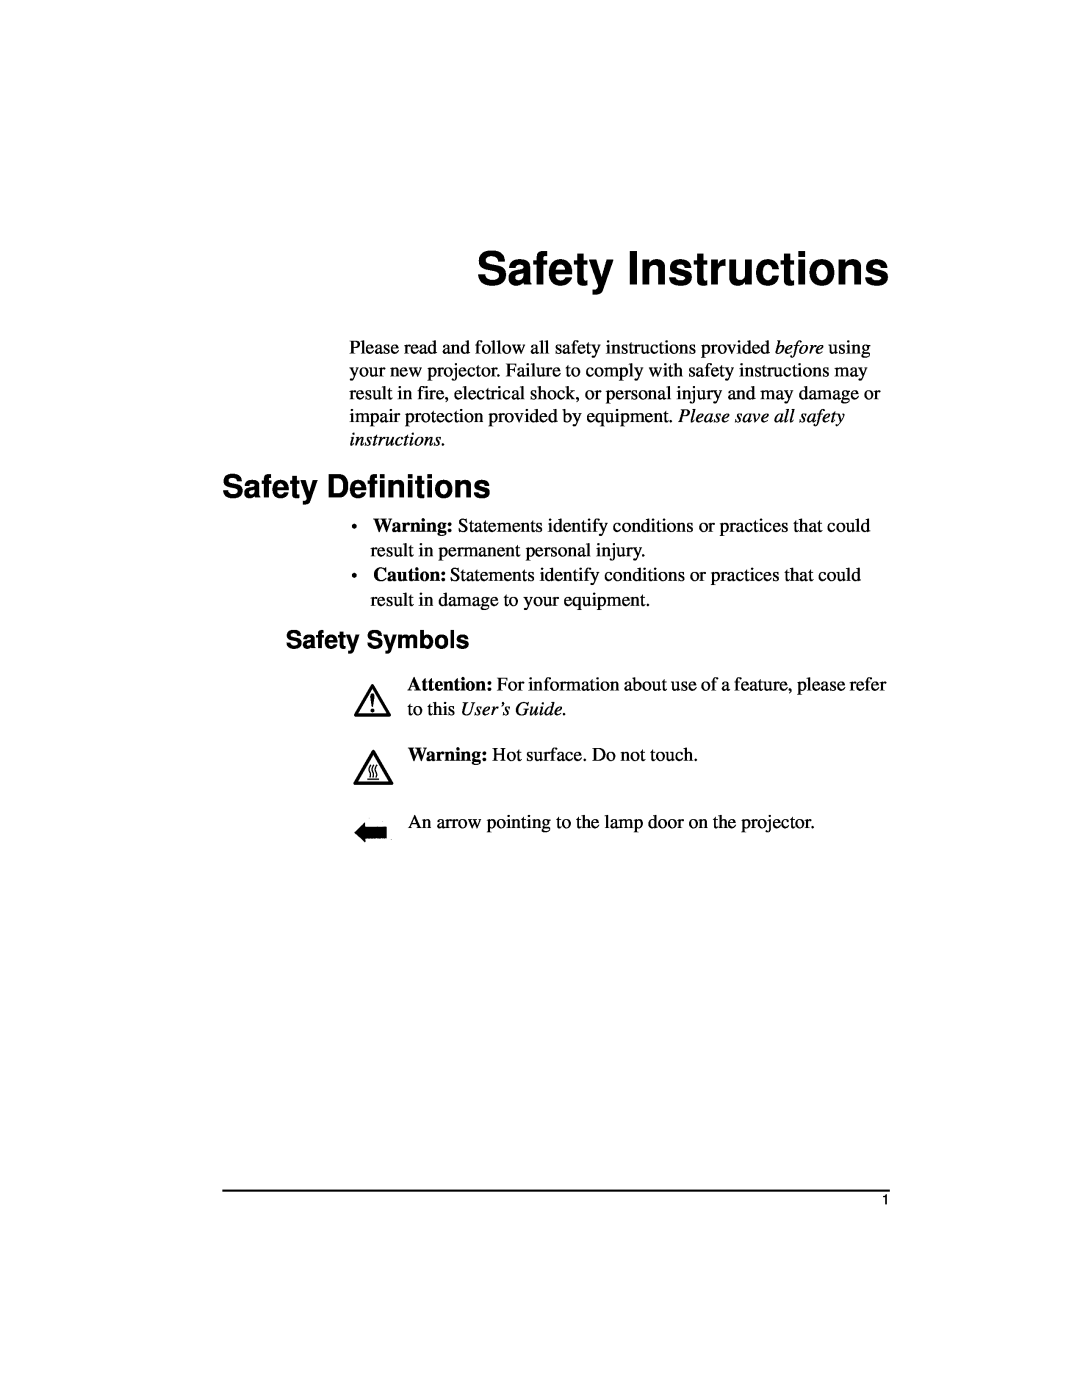 Kodak DP2000 manual Safety Instructions, Safety Definitions, Safety Symbols 